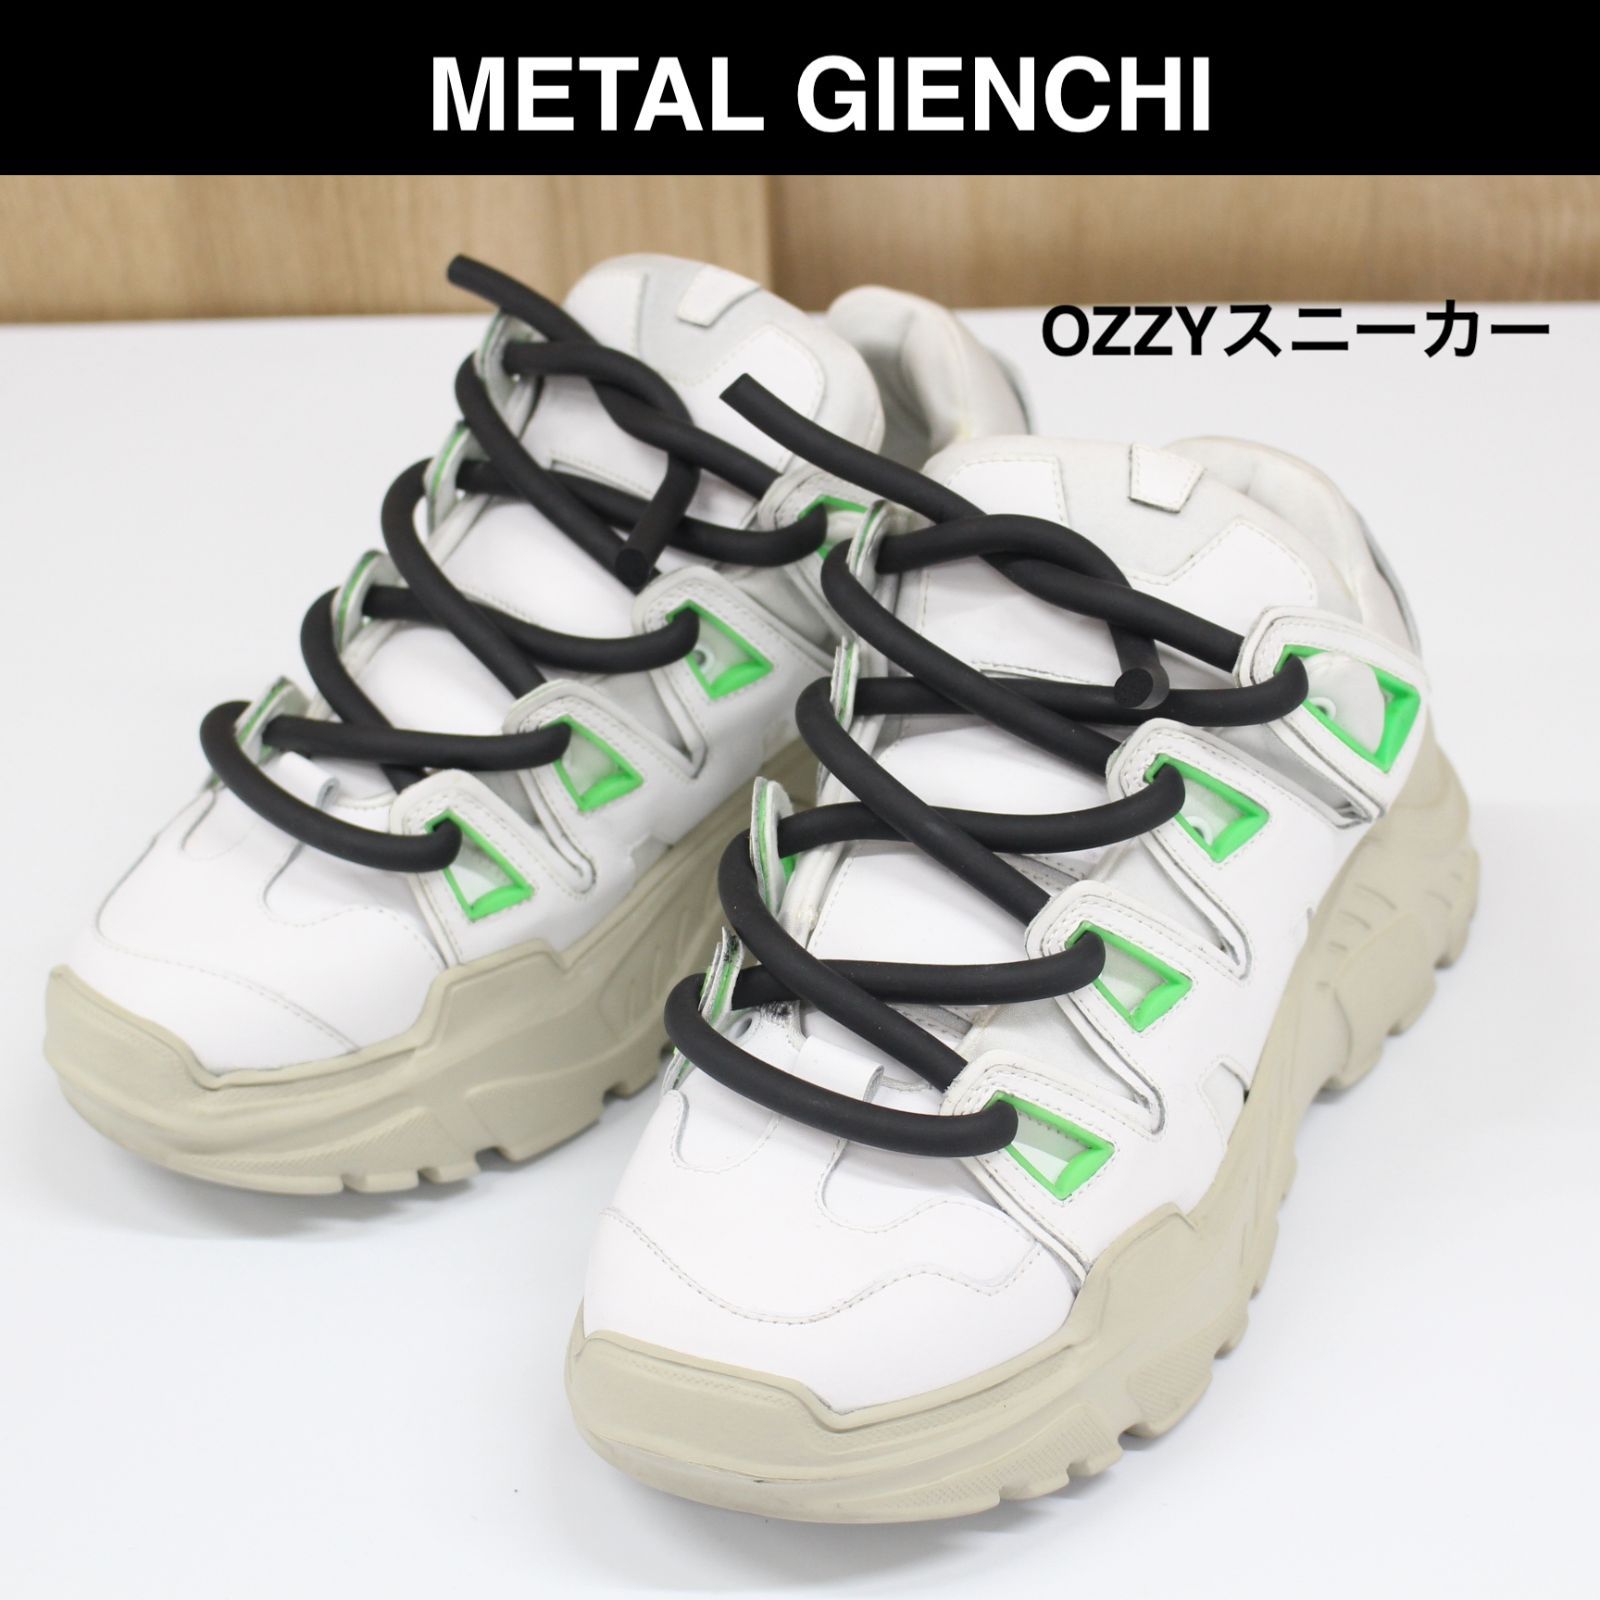 A08】METAL GIENCHI OZZY スニーカー サイズ42 ホワイト - 【ショップ